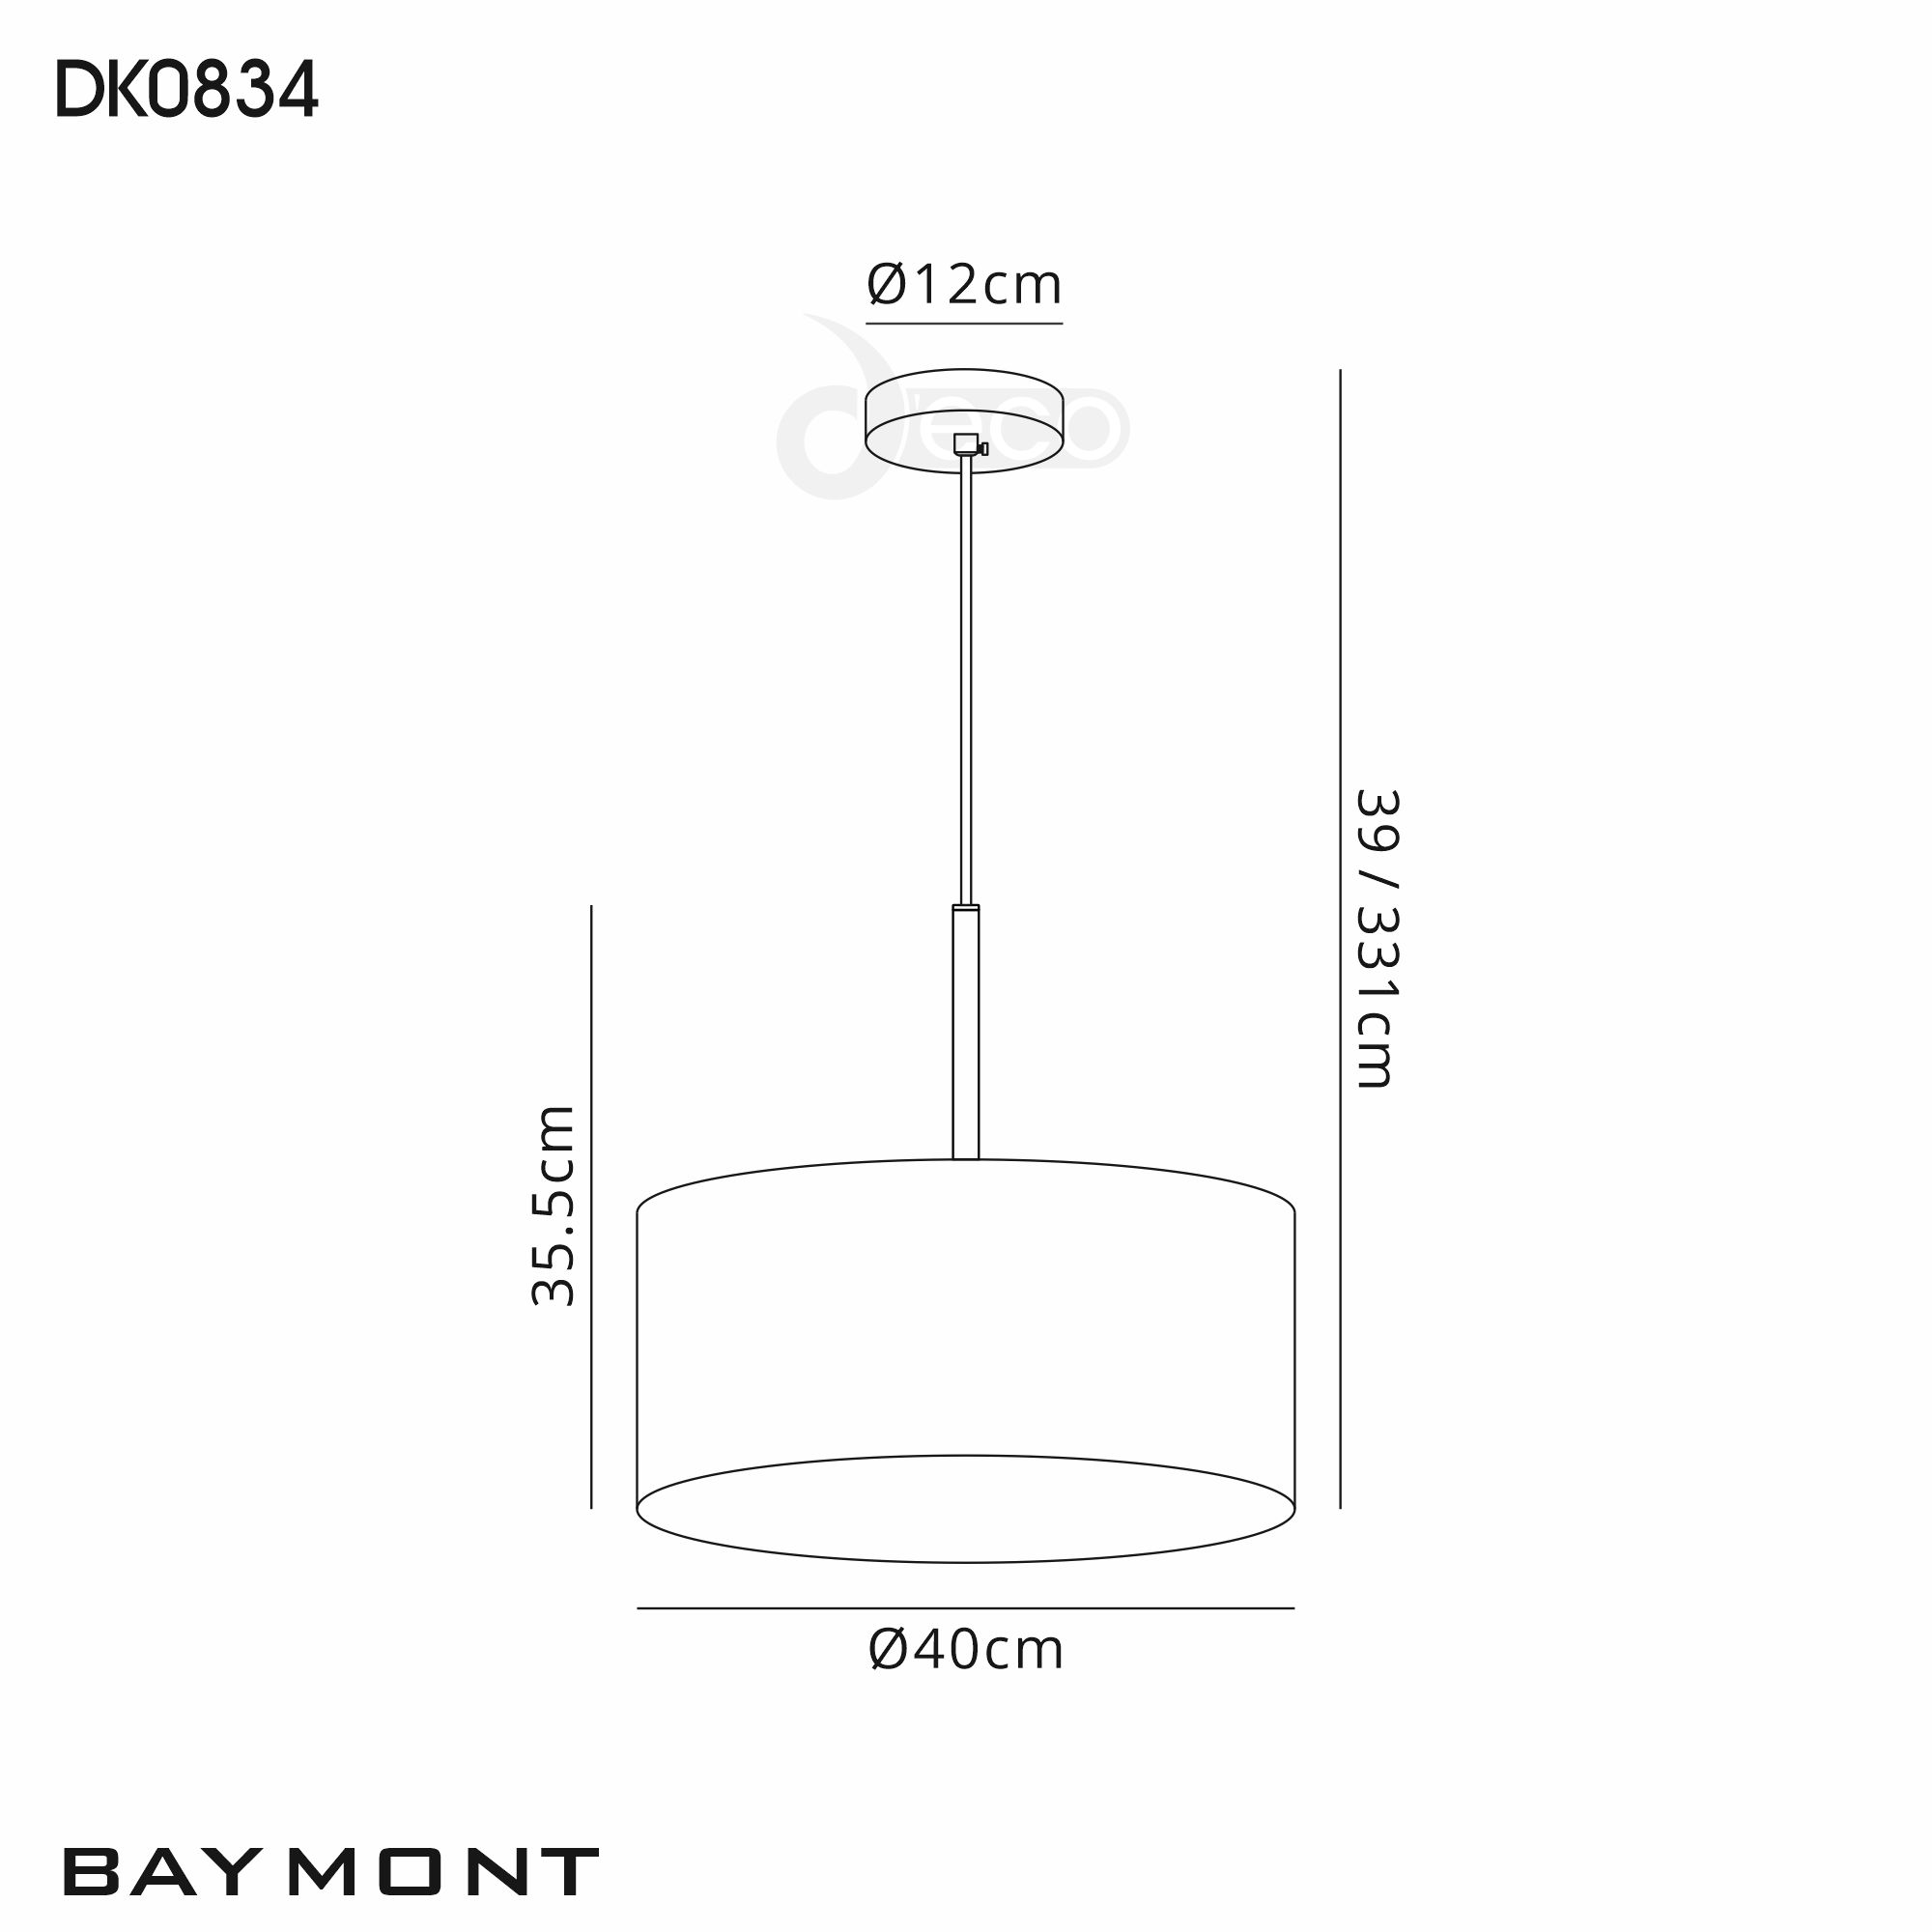 DK0834  Baymont 40cm 3 Light Pendant